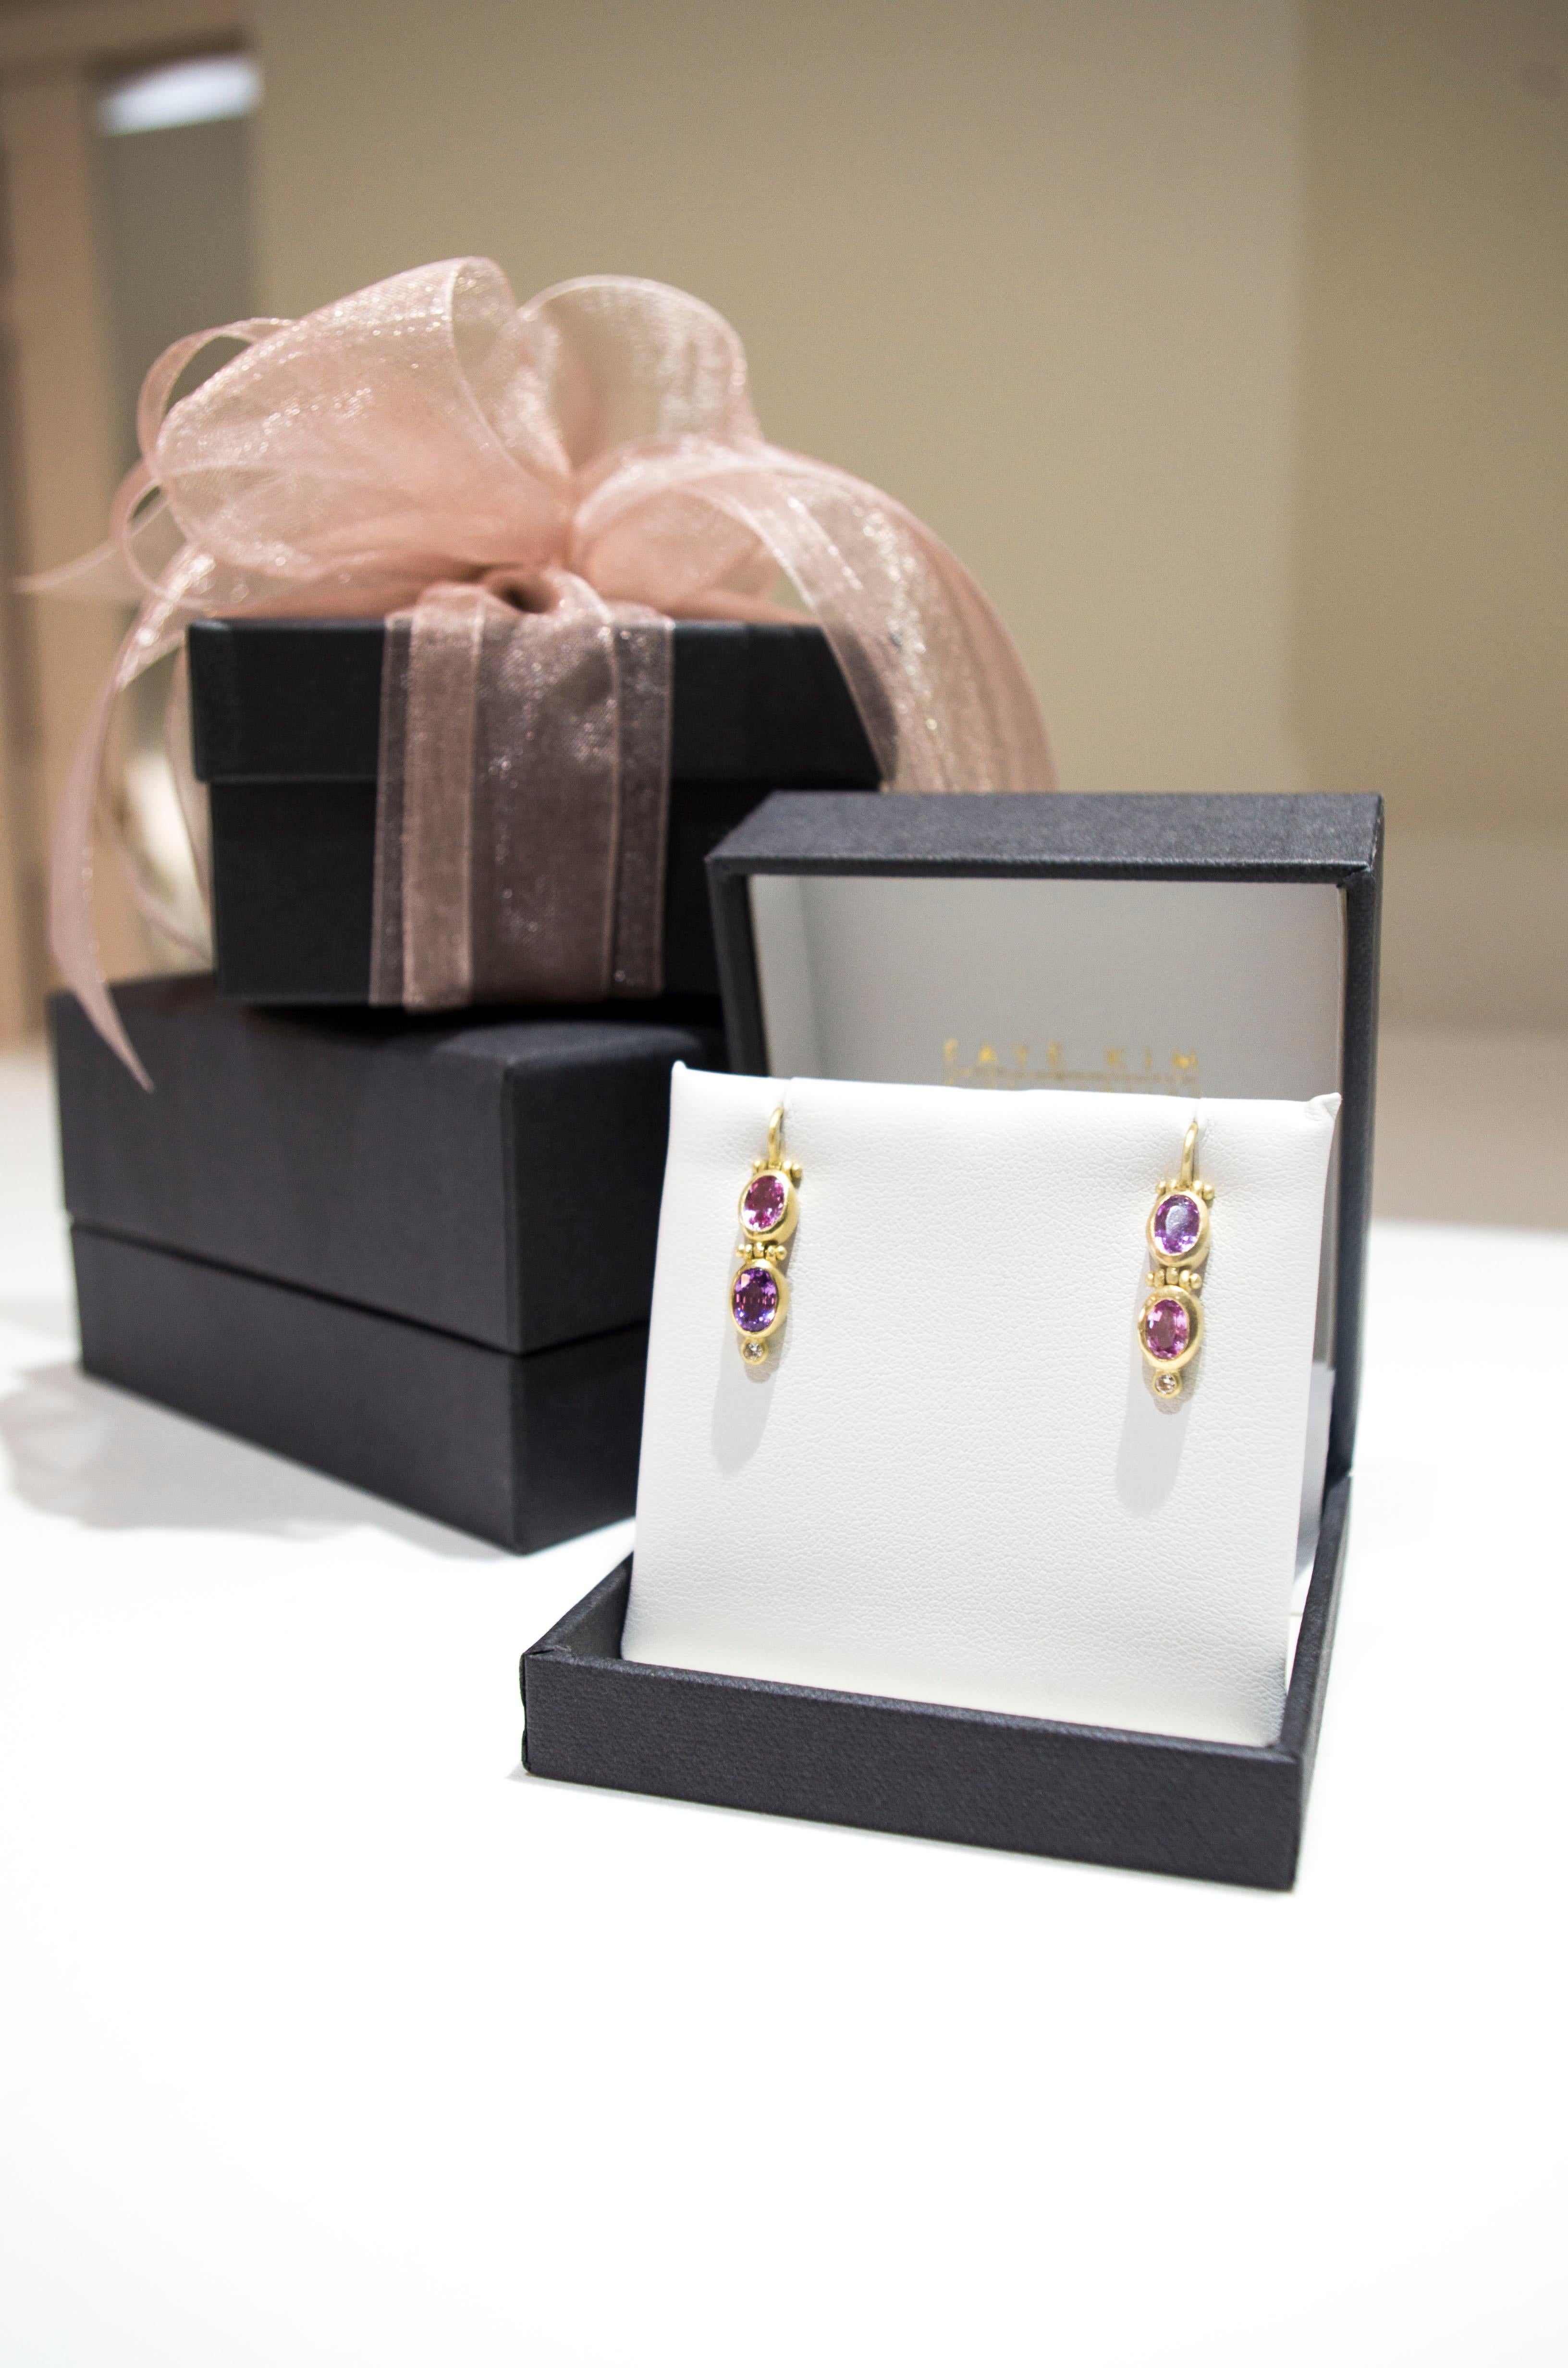 Oval Cut Faye Kim 18k Gold Oval Fancy Pink Purple Sapphire Earrings with Diamonds For Sale